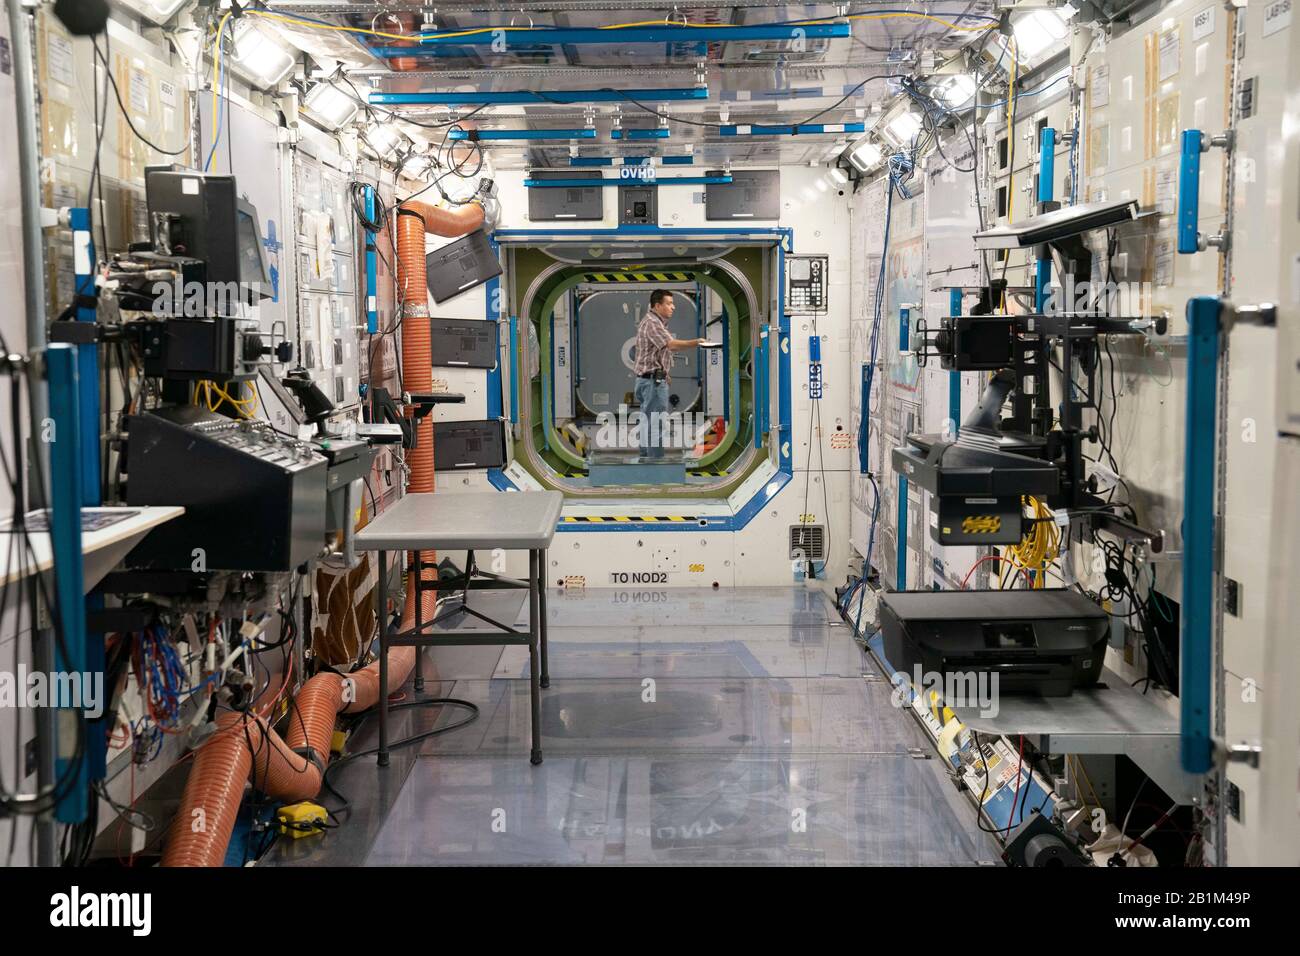 Interno di un mock-up di dimensioni complete della Stazione spaziale Internazionale (ISS) al Johnson Space Center. La struttura è utilizzata per la formazione degli astronauti per familiarizzare con la ISS prima delle missioni. Foto Stock